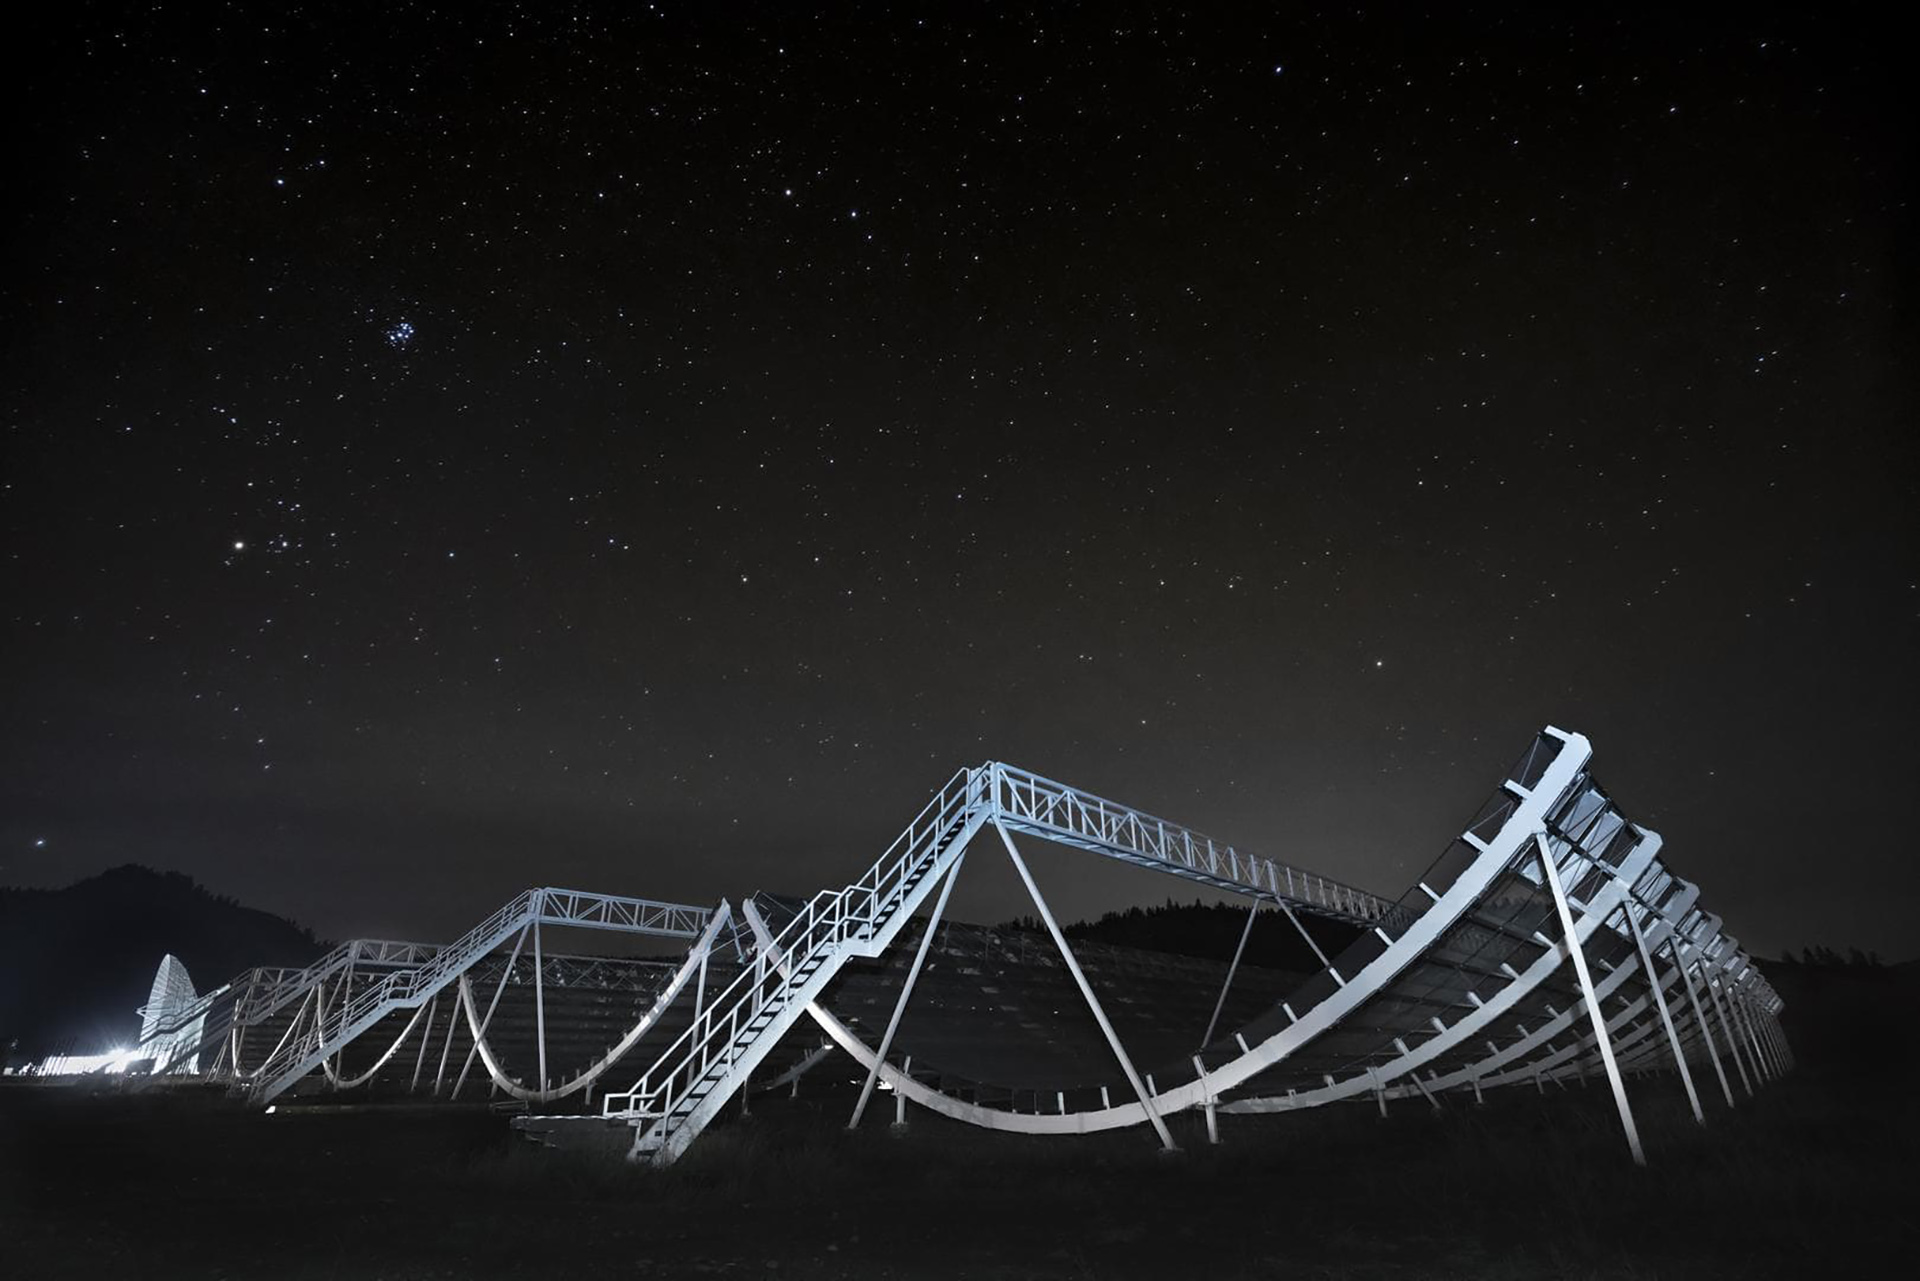 El Experimento Canadiense de Mapeo de Intensidad de Hidrógeno, o CHIME, un radiotelescopio canadiense, se muestra de noche.